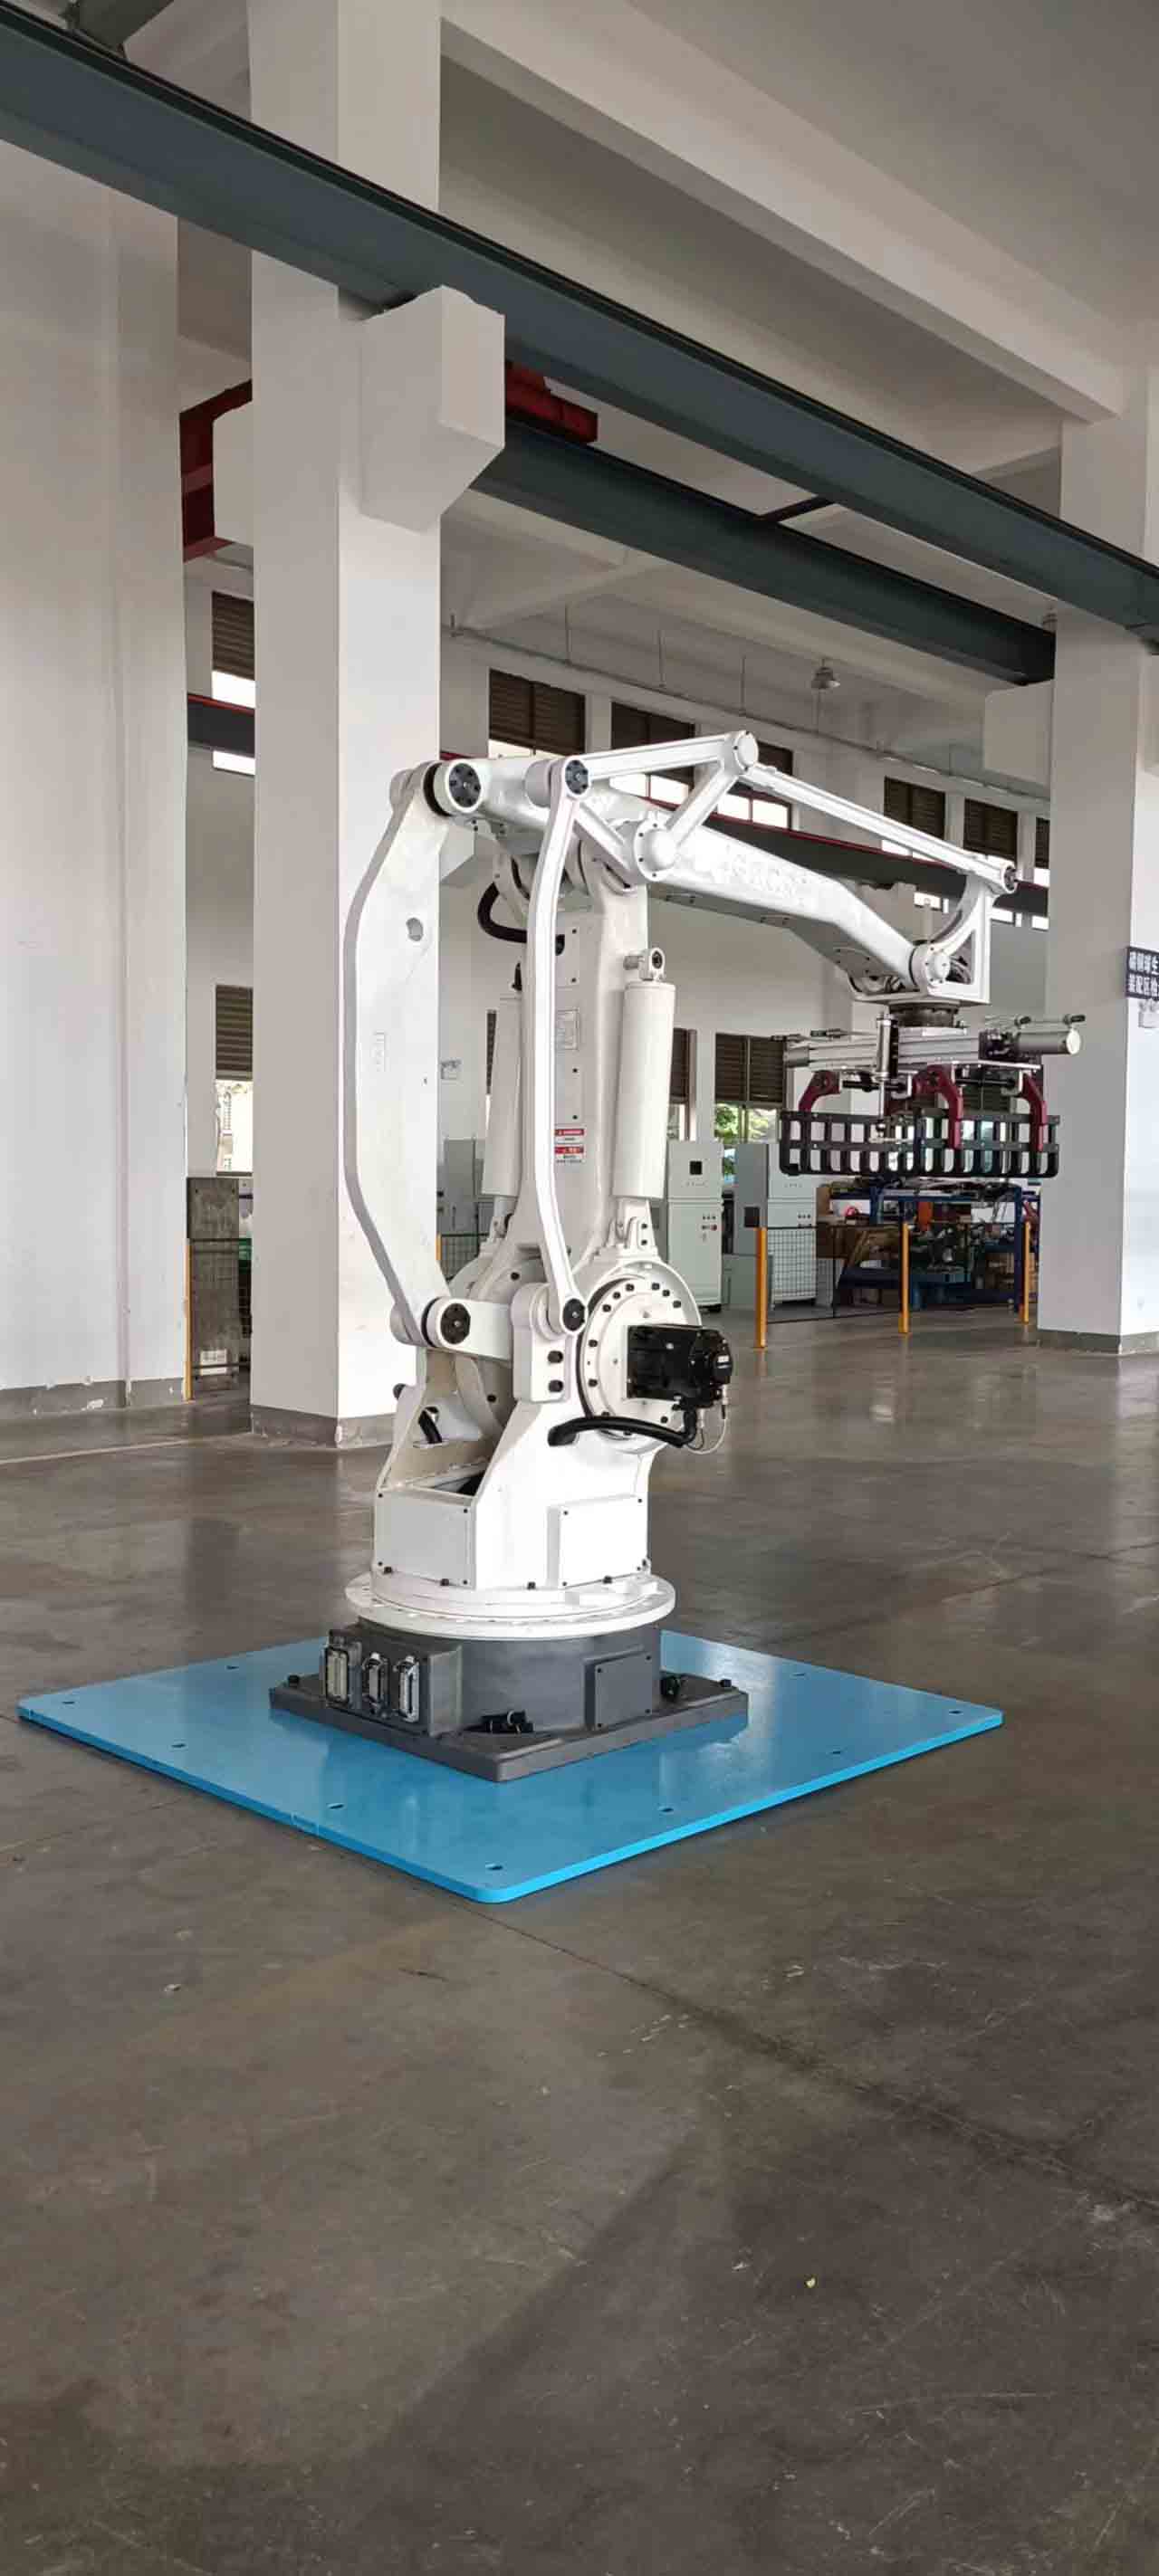 Робот-палетоукладчик грузоподъемностью 800 кг